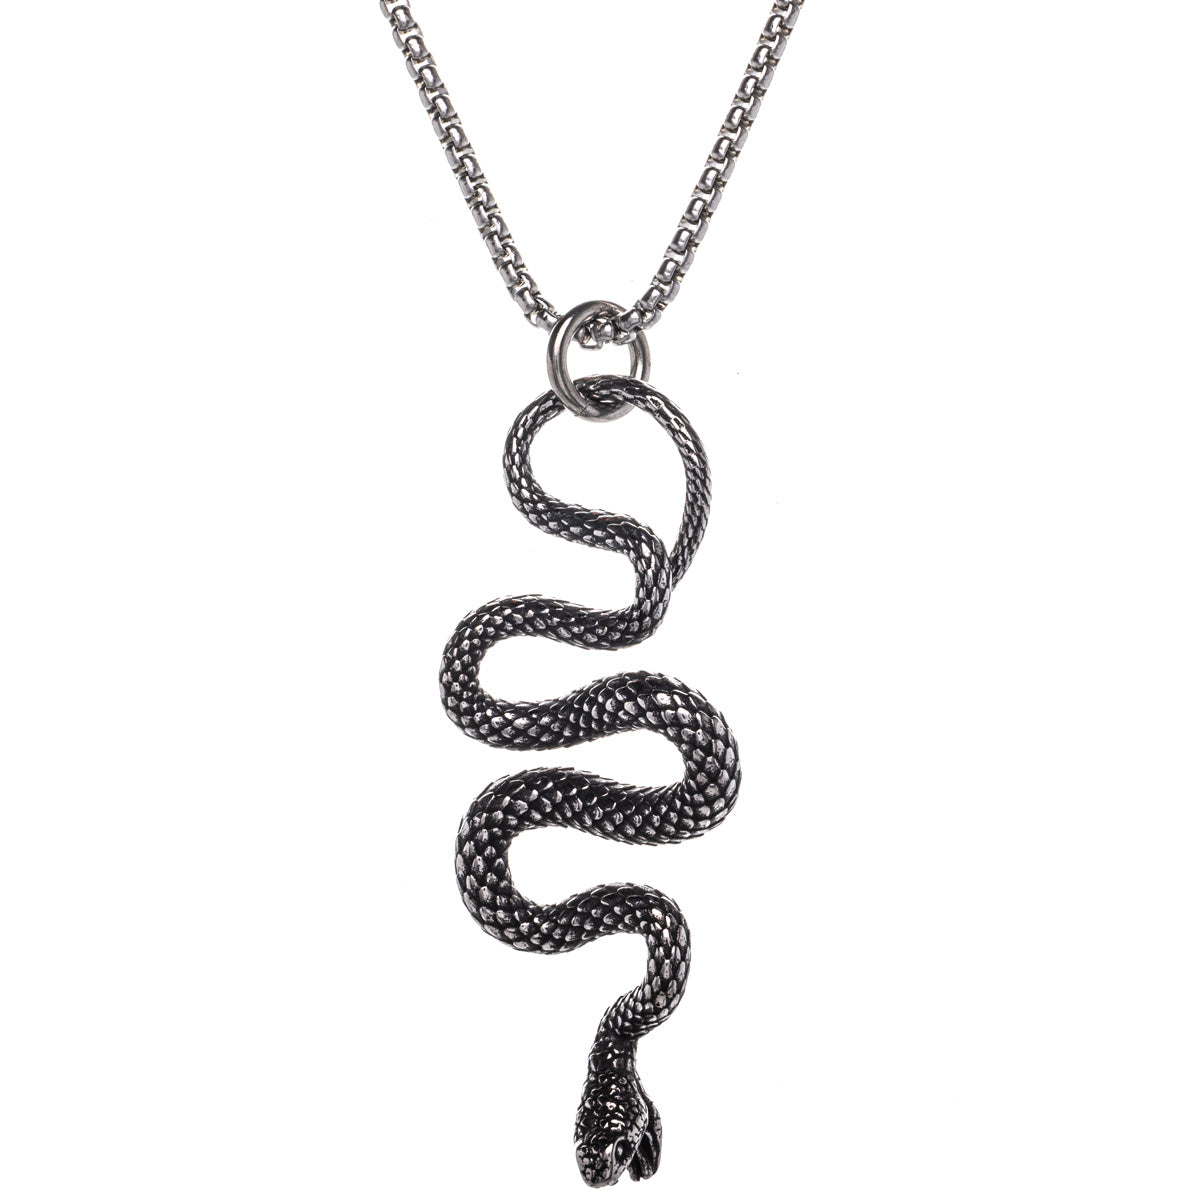 Jormungand serpent pendant necklace (Steel 316L)